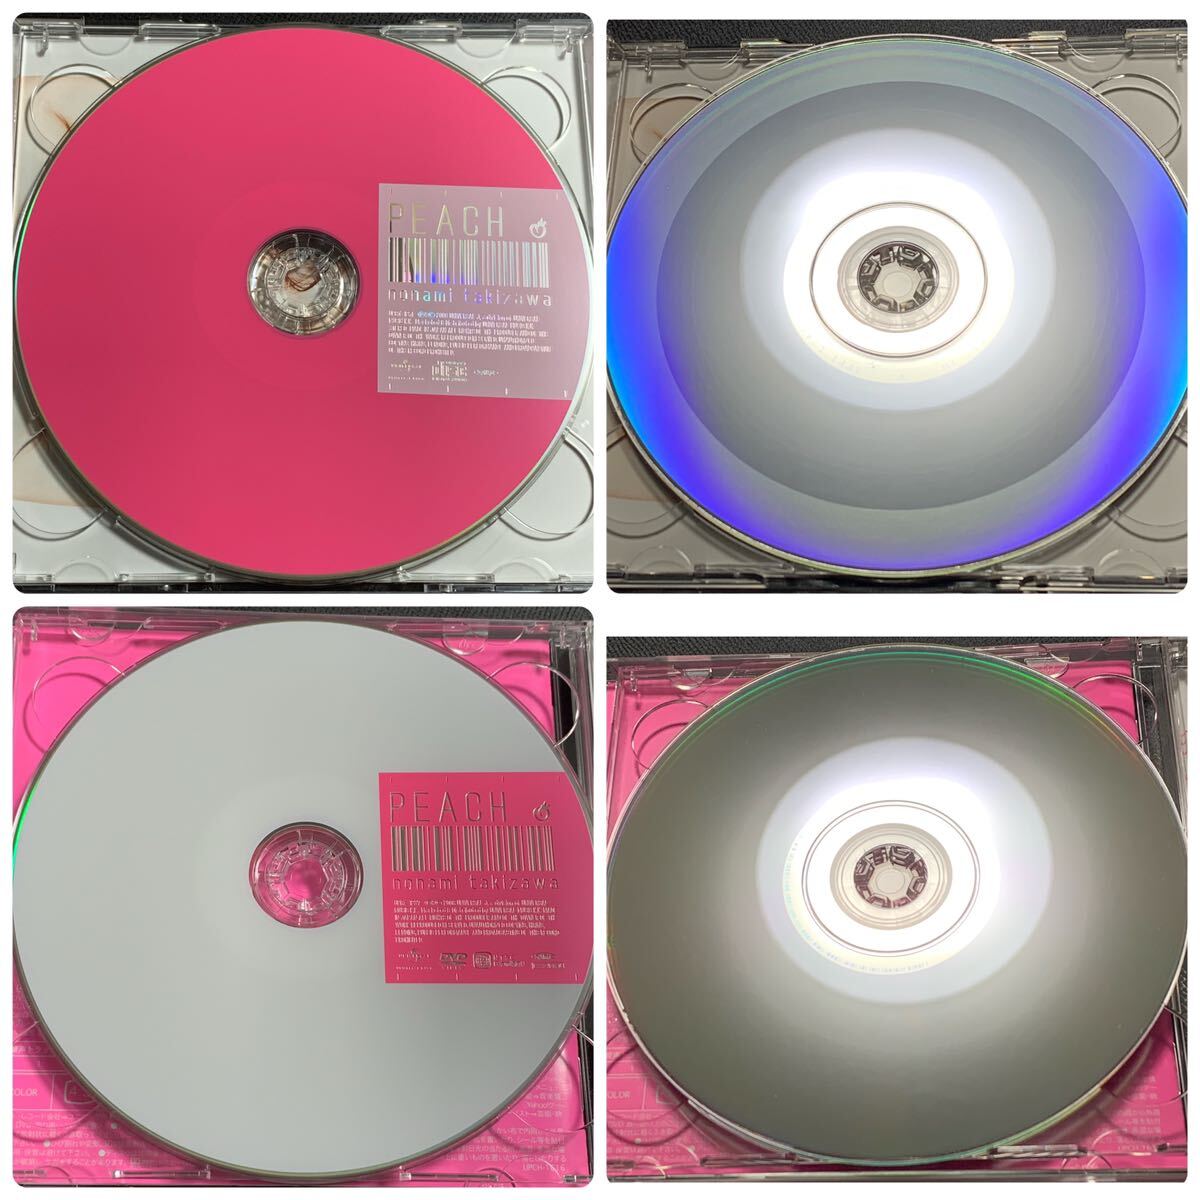 #3/美品帯付き/ 滝沢乃南(たきざわのなみ) 『ピーチ』CD+DVD2枚組の画像4